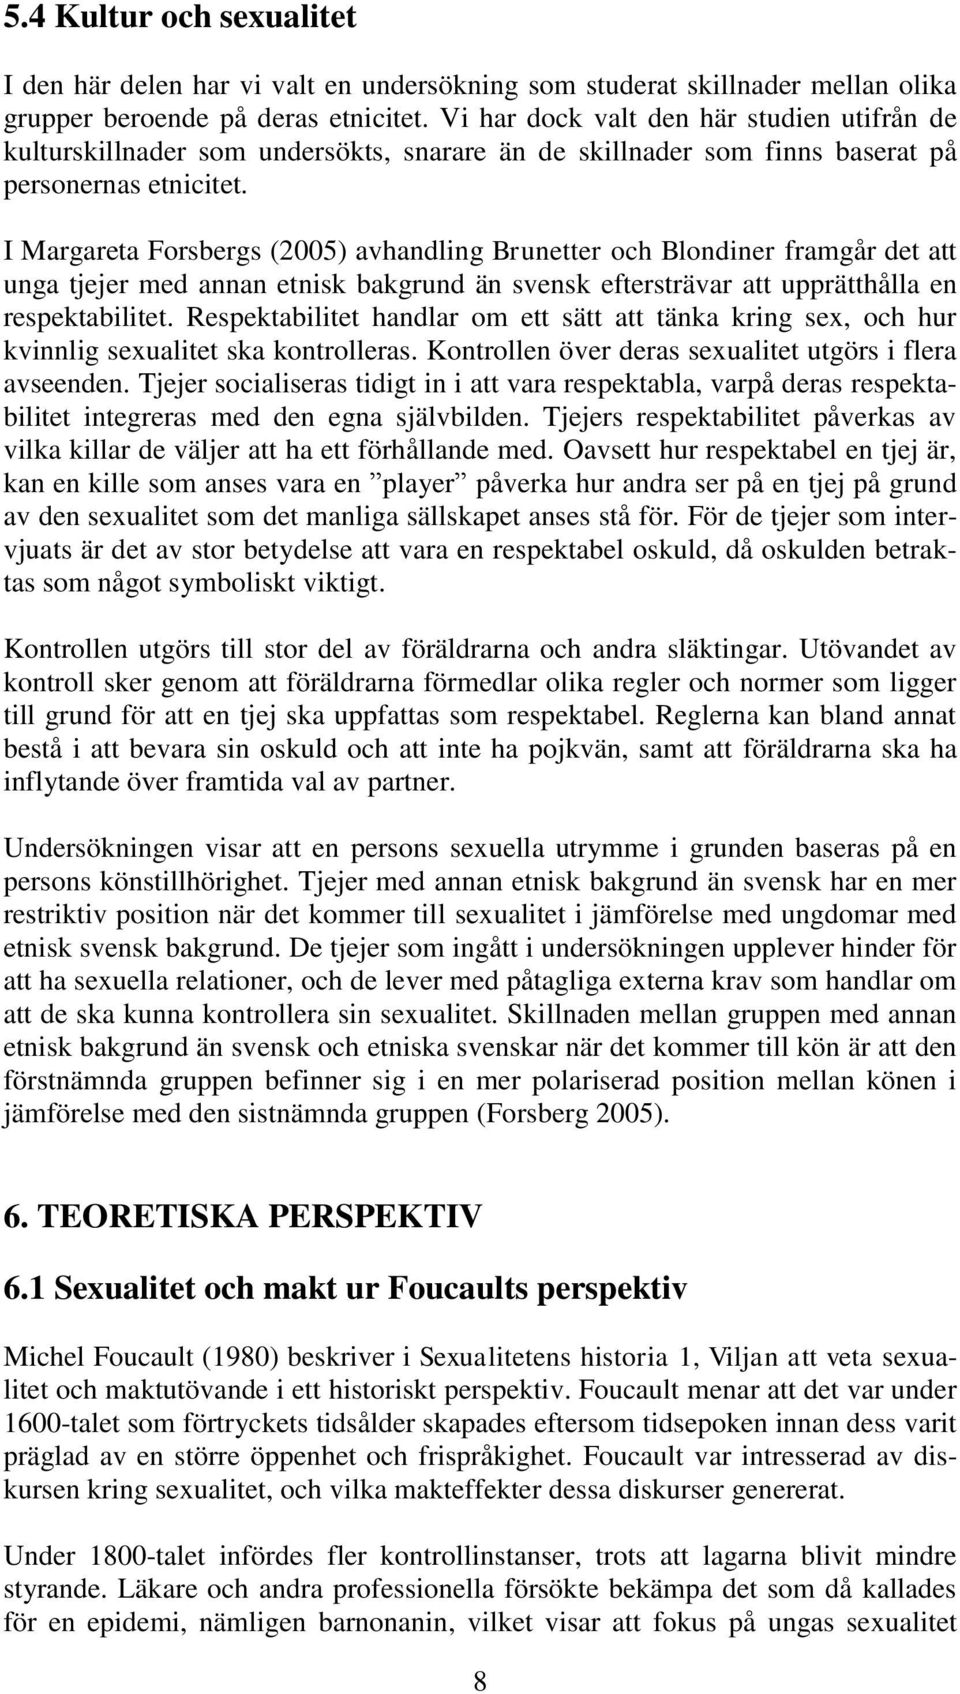 I Margareta Forsbergs (2005) avhandling Brunetter och Blondiner framgår det att unga tjejer med annan etnisk bakgrund än svensk eftersträvar att upprätthålla en respektabilitet.